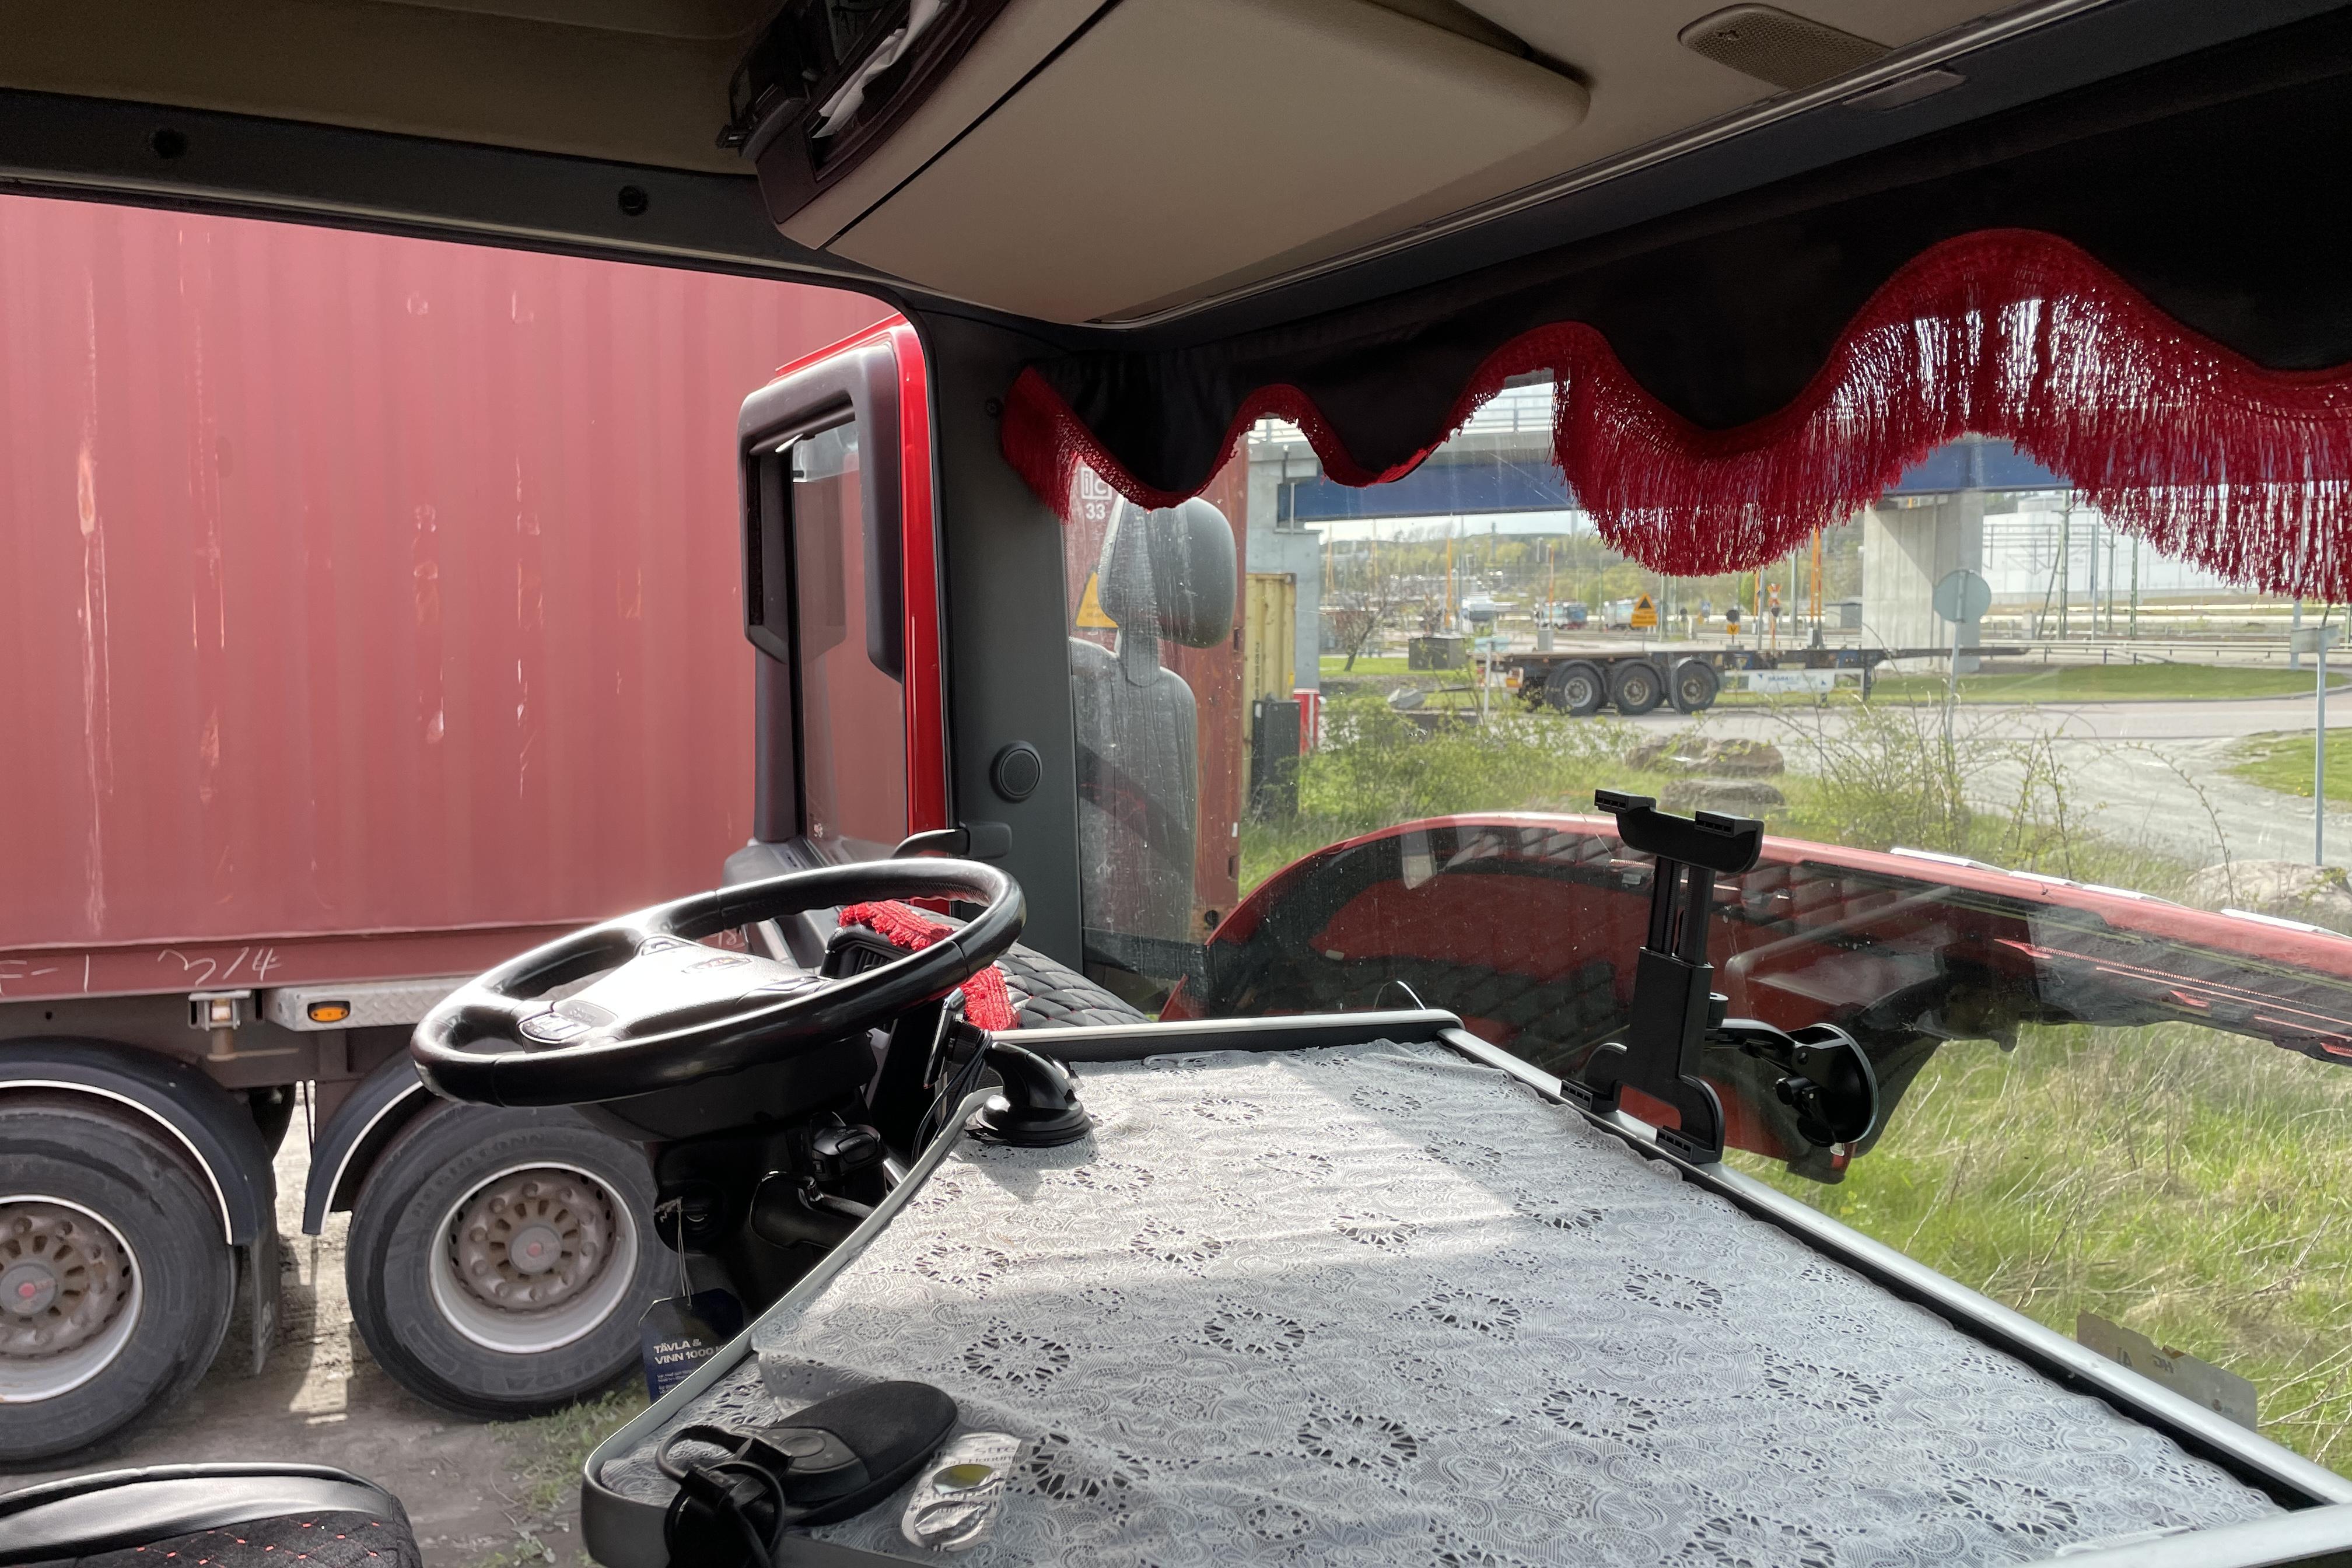 Scania R410 - 564 816 km - Automaattinen - punainen - 2017